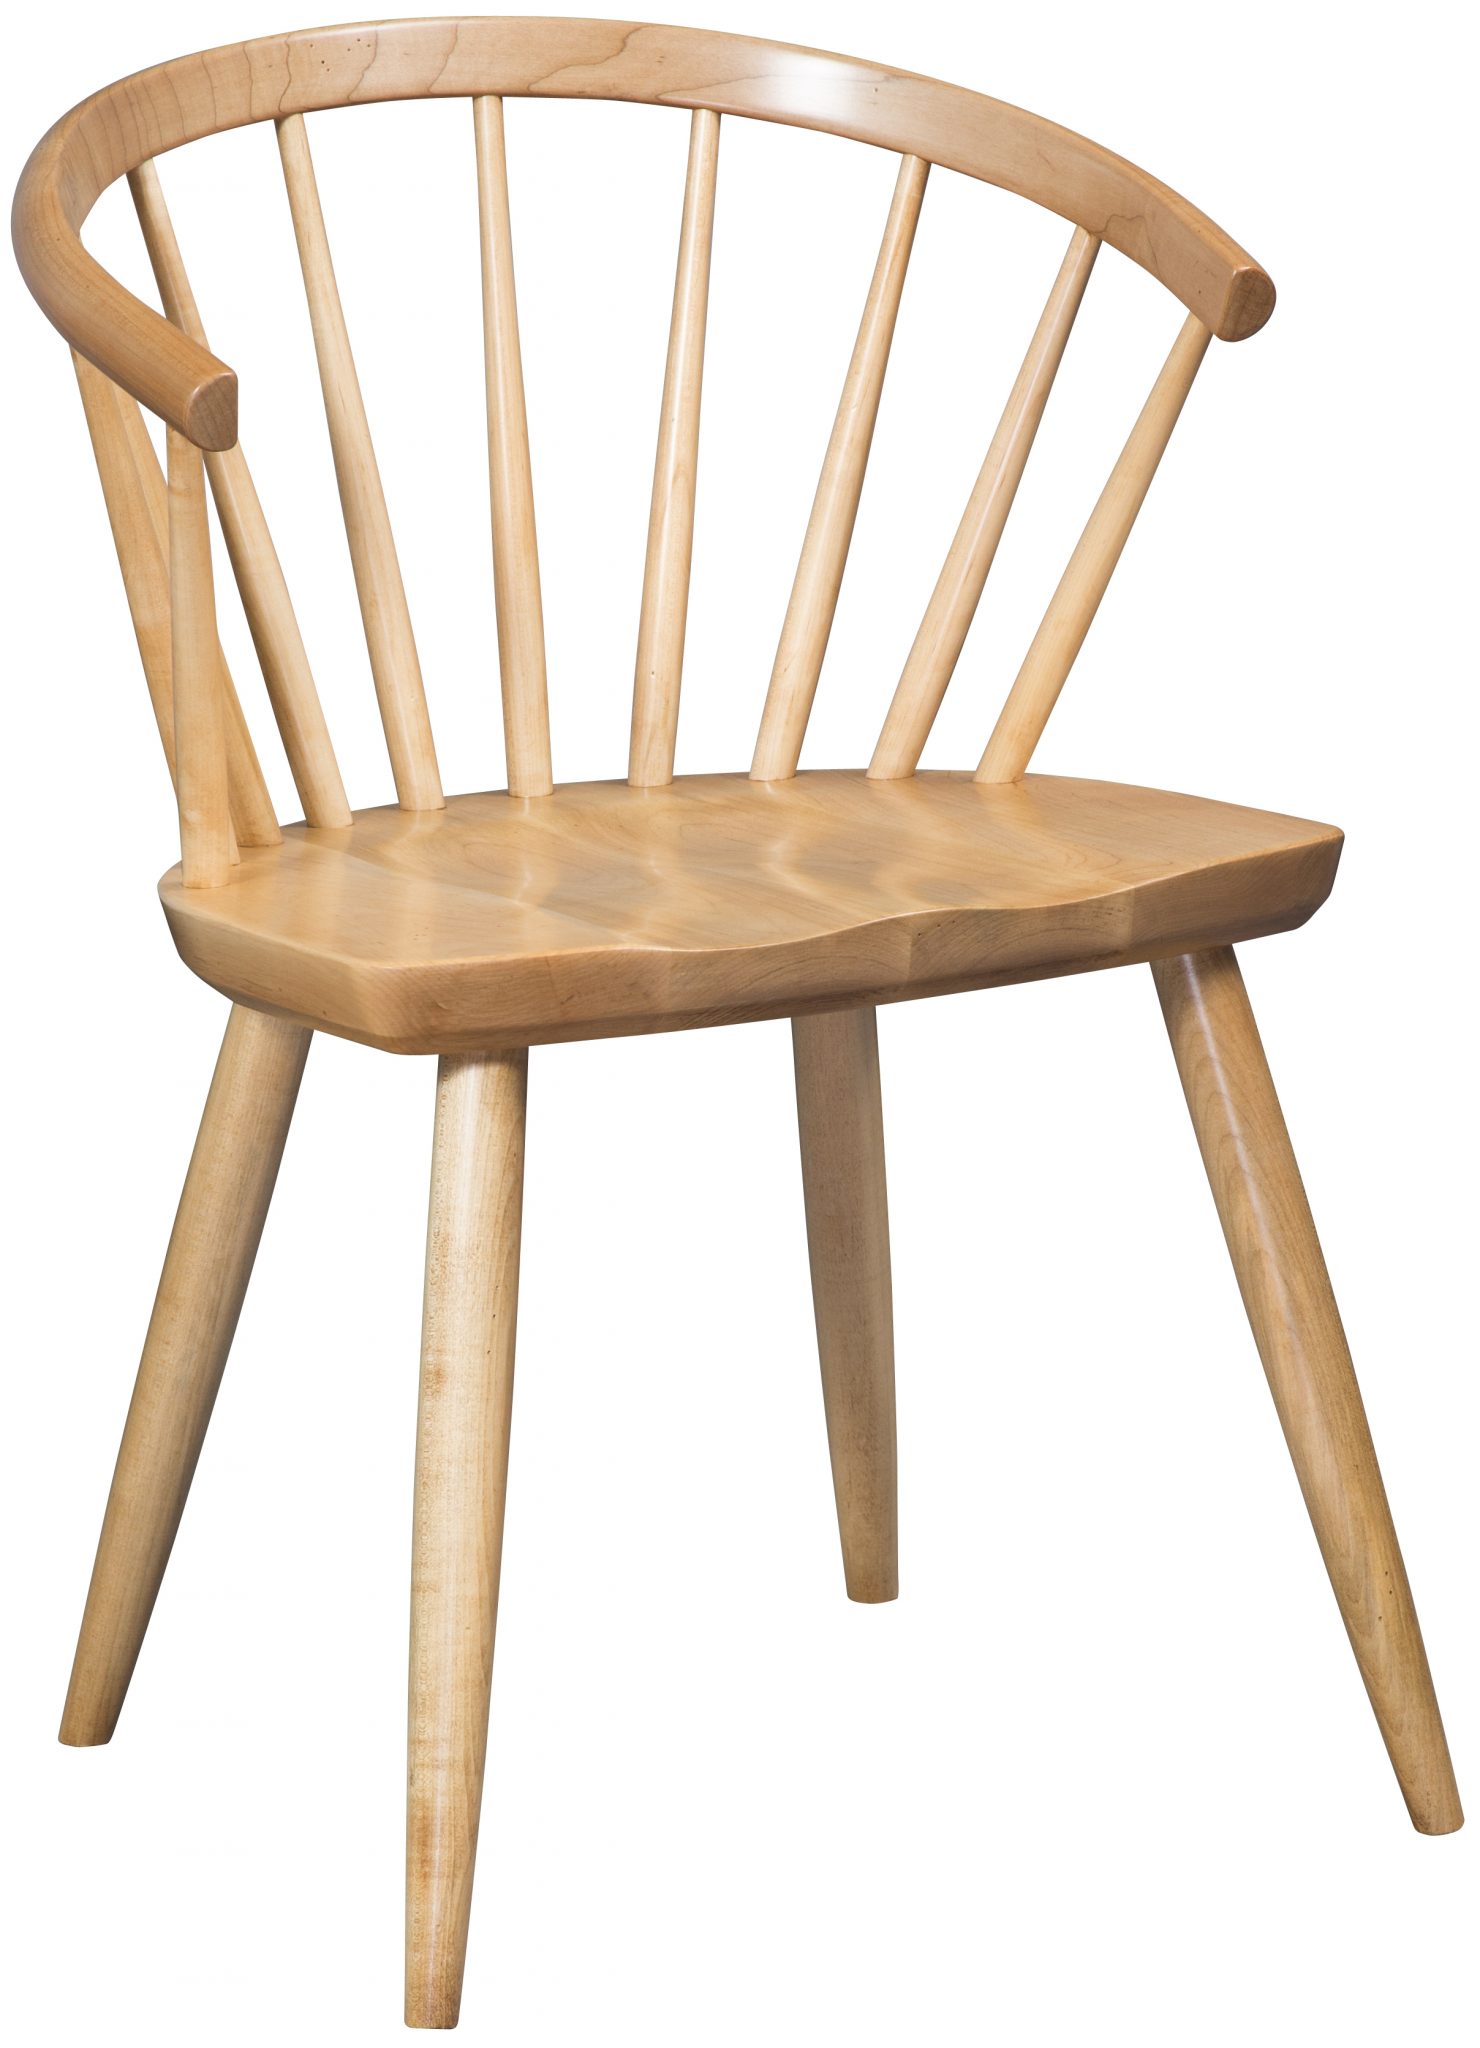 Park Avenue Chair Image